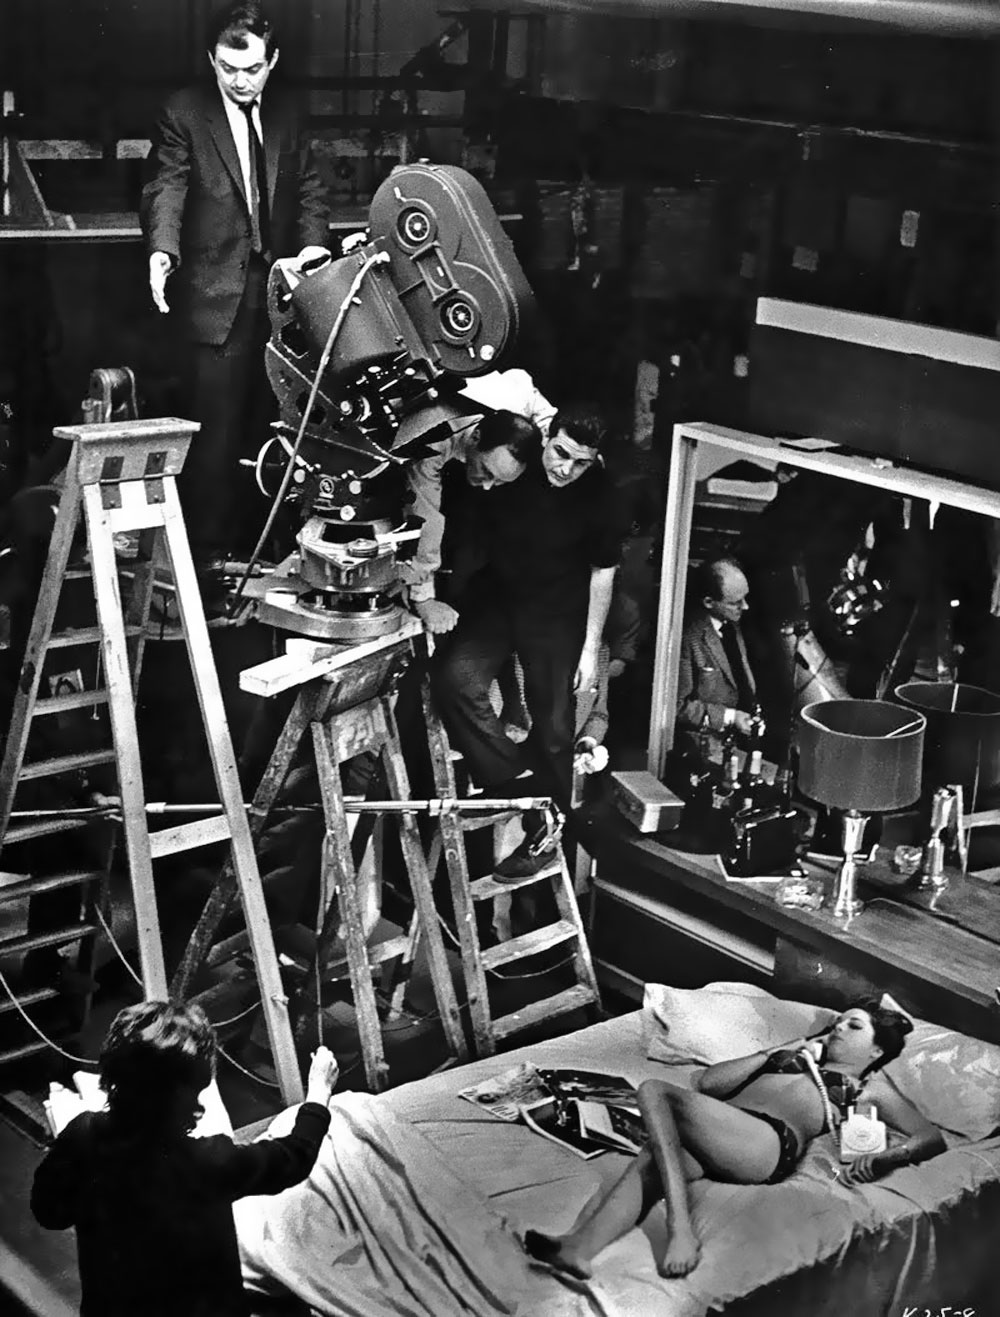 Strangelove Photos sur des tournages de films  photo histoire featured cinema 2 art 